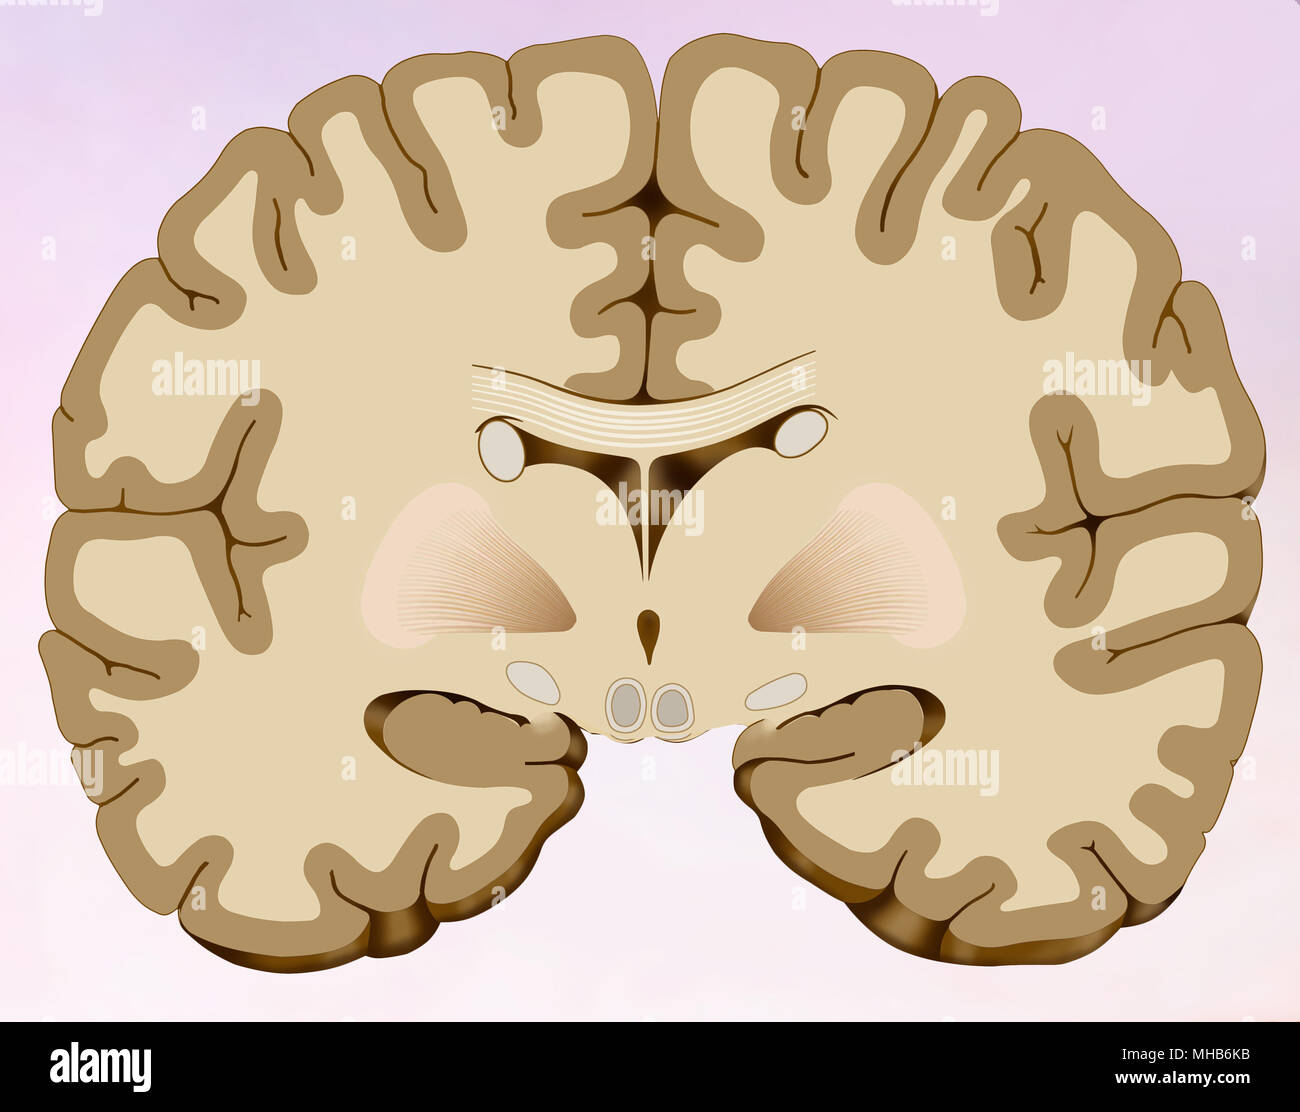 Sezione coronale del cervello umano in cui possiamo vedere il cervello composto da due metà Foto Stock